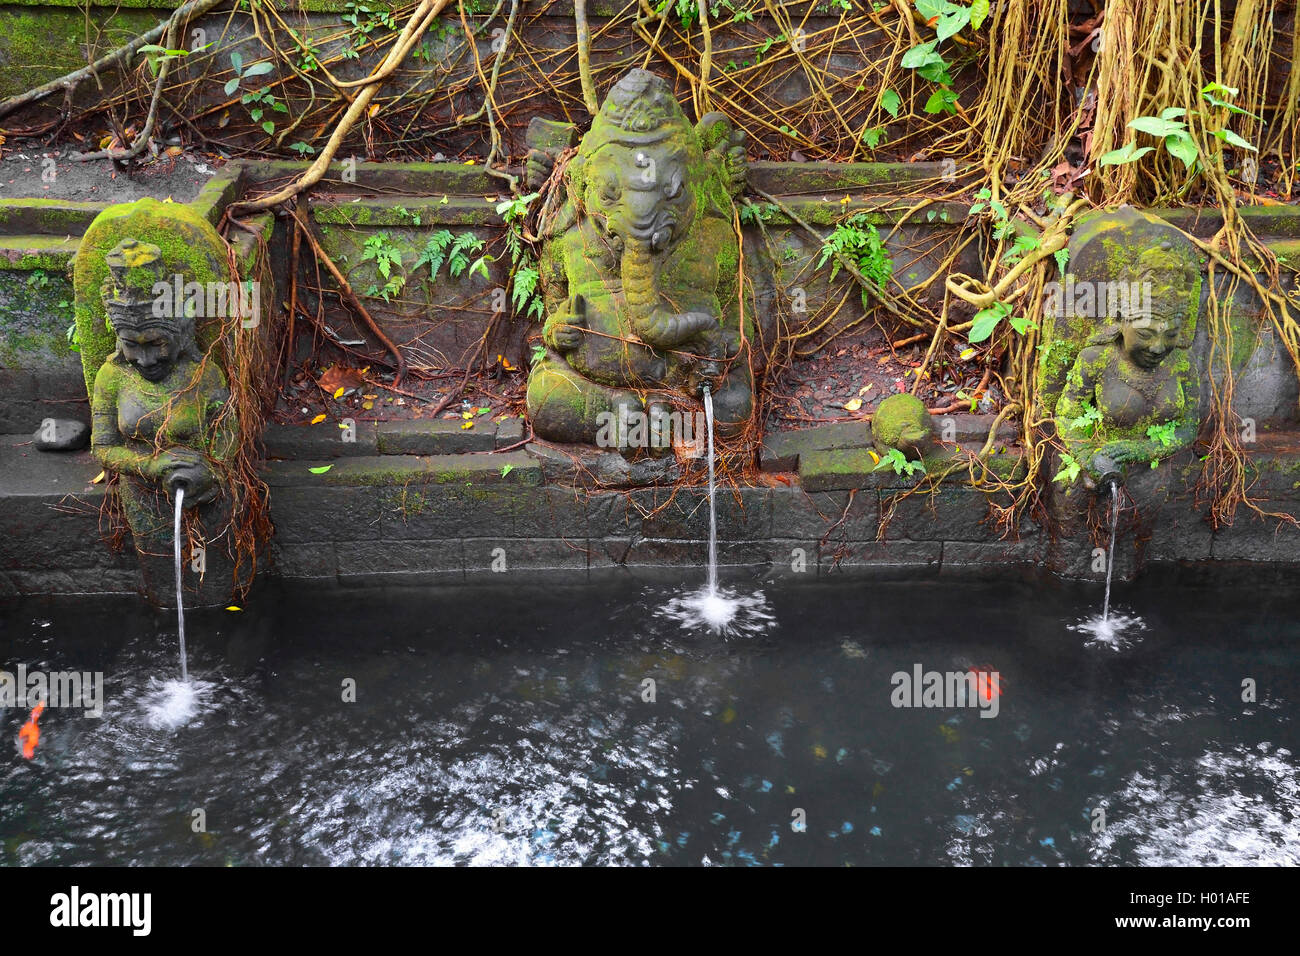 saint figures as gargoyles in the Sacred Monkey Forest Sanctuary, Indonesia, Bali, Ubud Stock Photo